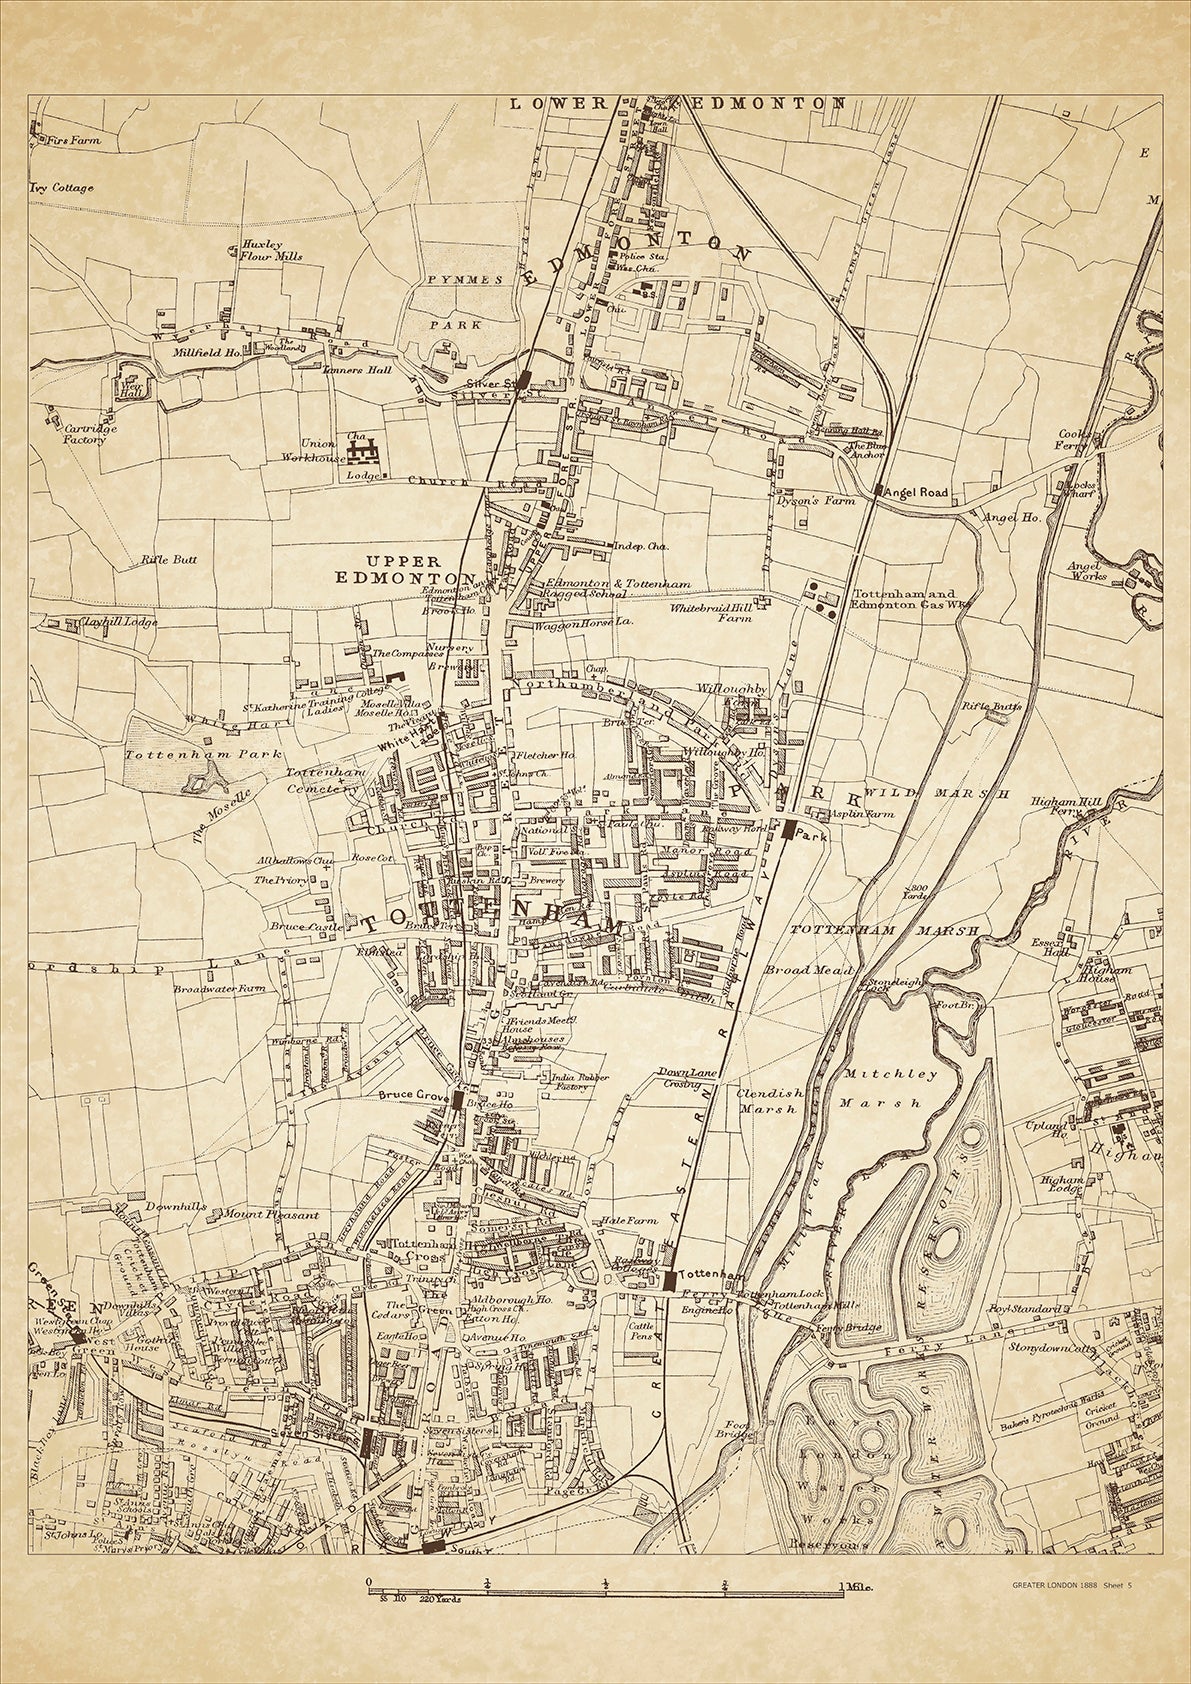 Greater London in 1888 Series - showing Tottenham, Edmonton, Lower Edmonton (south), Upper Edmonton - sheet 5